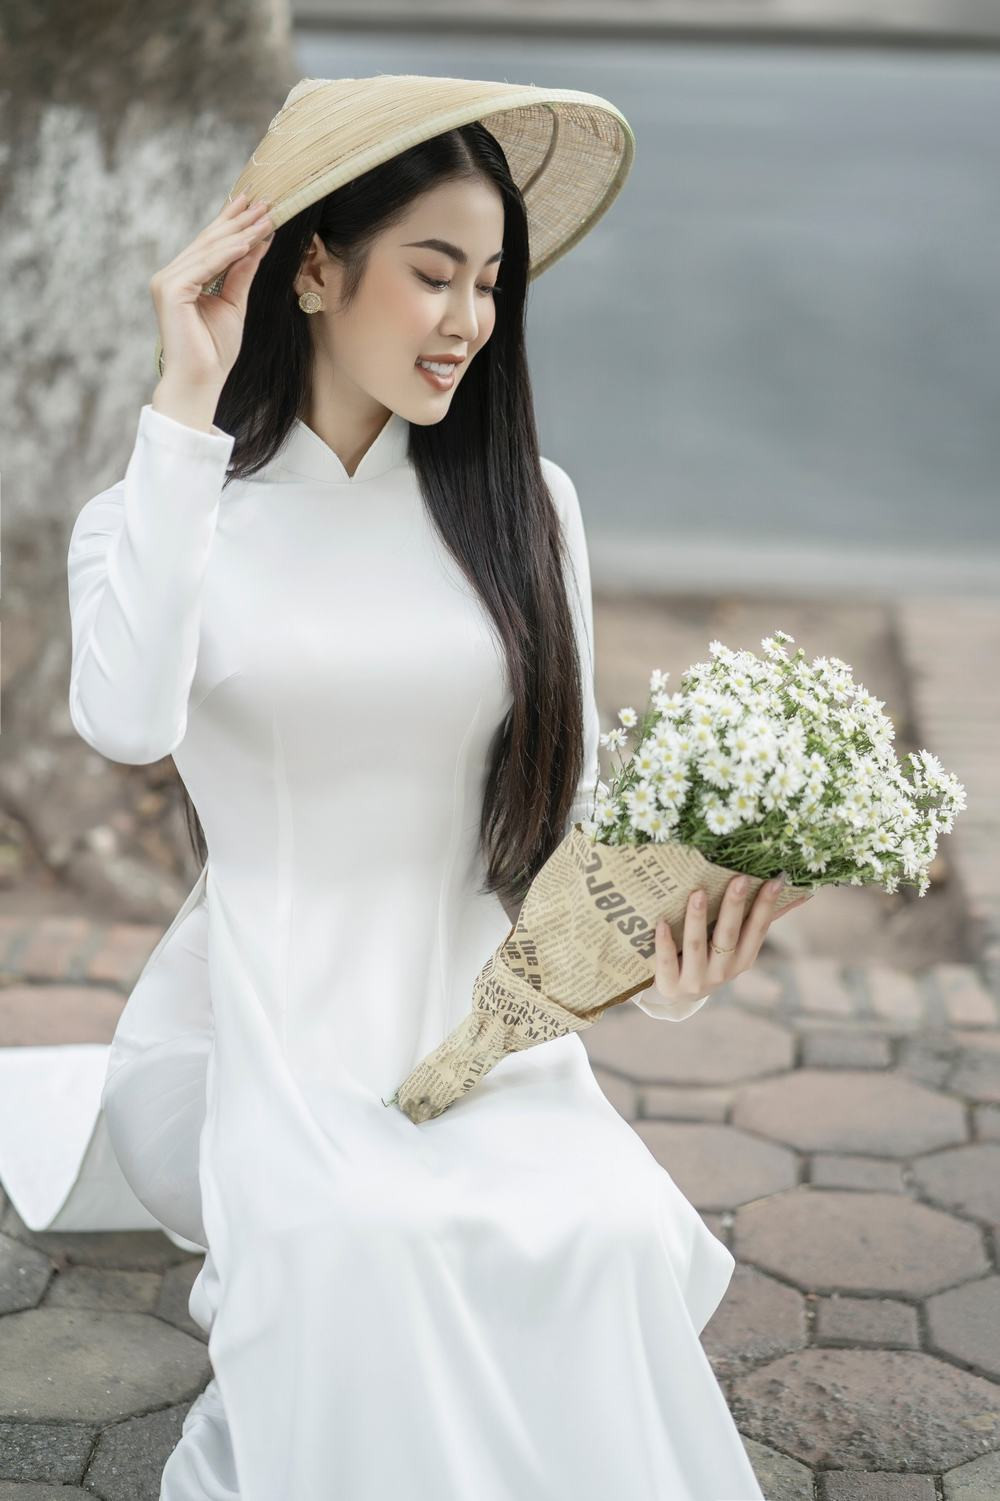 Á hậu Thu Hằng khi nền nã, lúc quyến rũ khi diện áo dài Nguyễn Minh Long